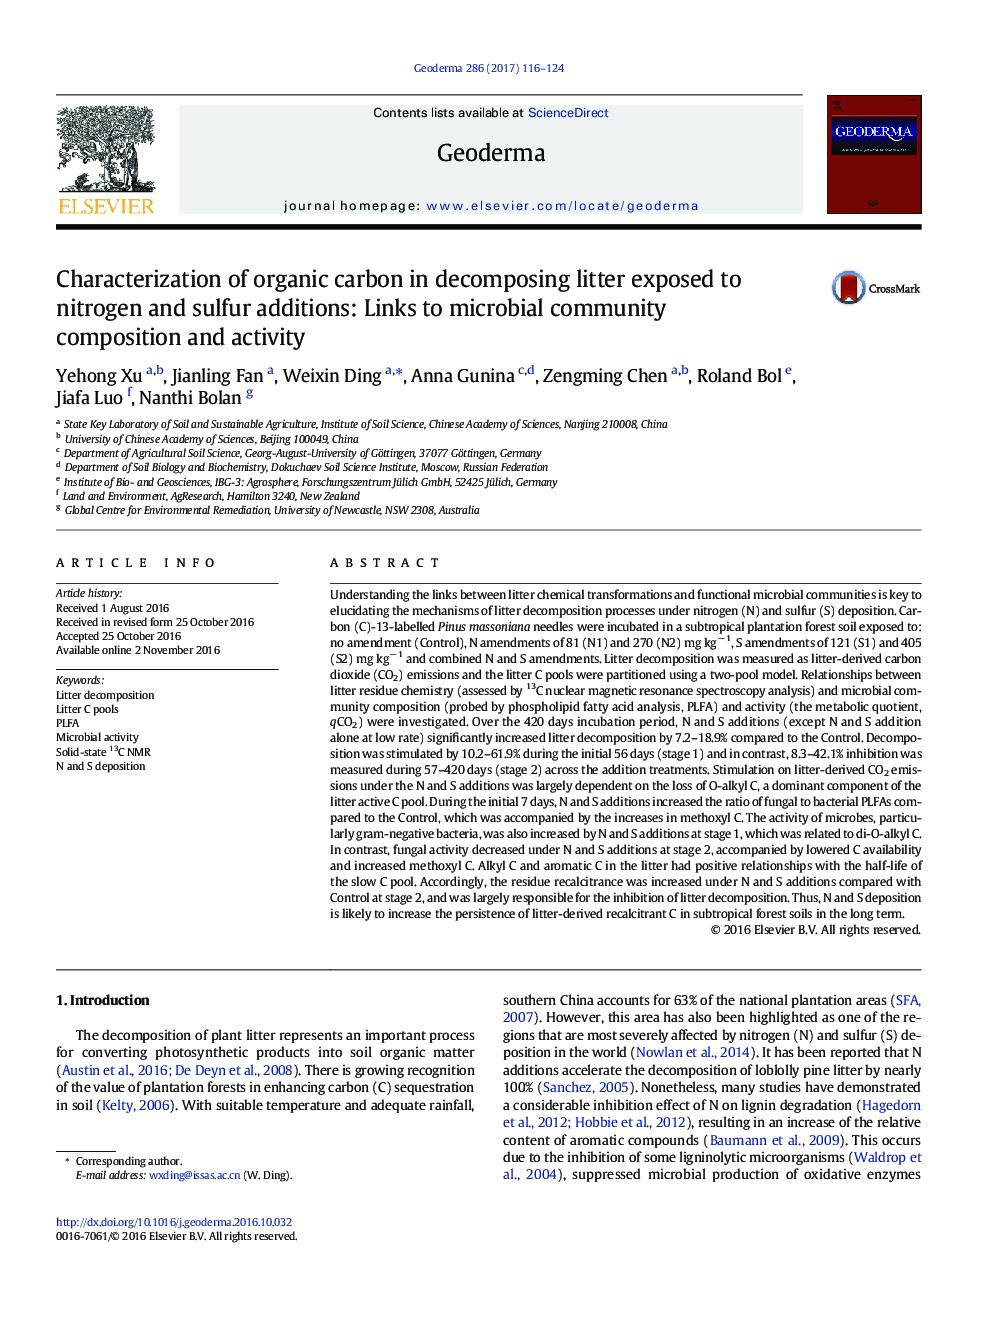 خصوصیات کربن آلی در تجزیه بستر در معرض افزودنی های نیتروژن و گوگرد: پیوندهای مربوط به ترکیب جامعه میکروبی و فعالیت